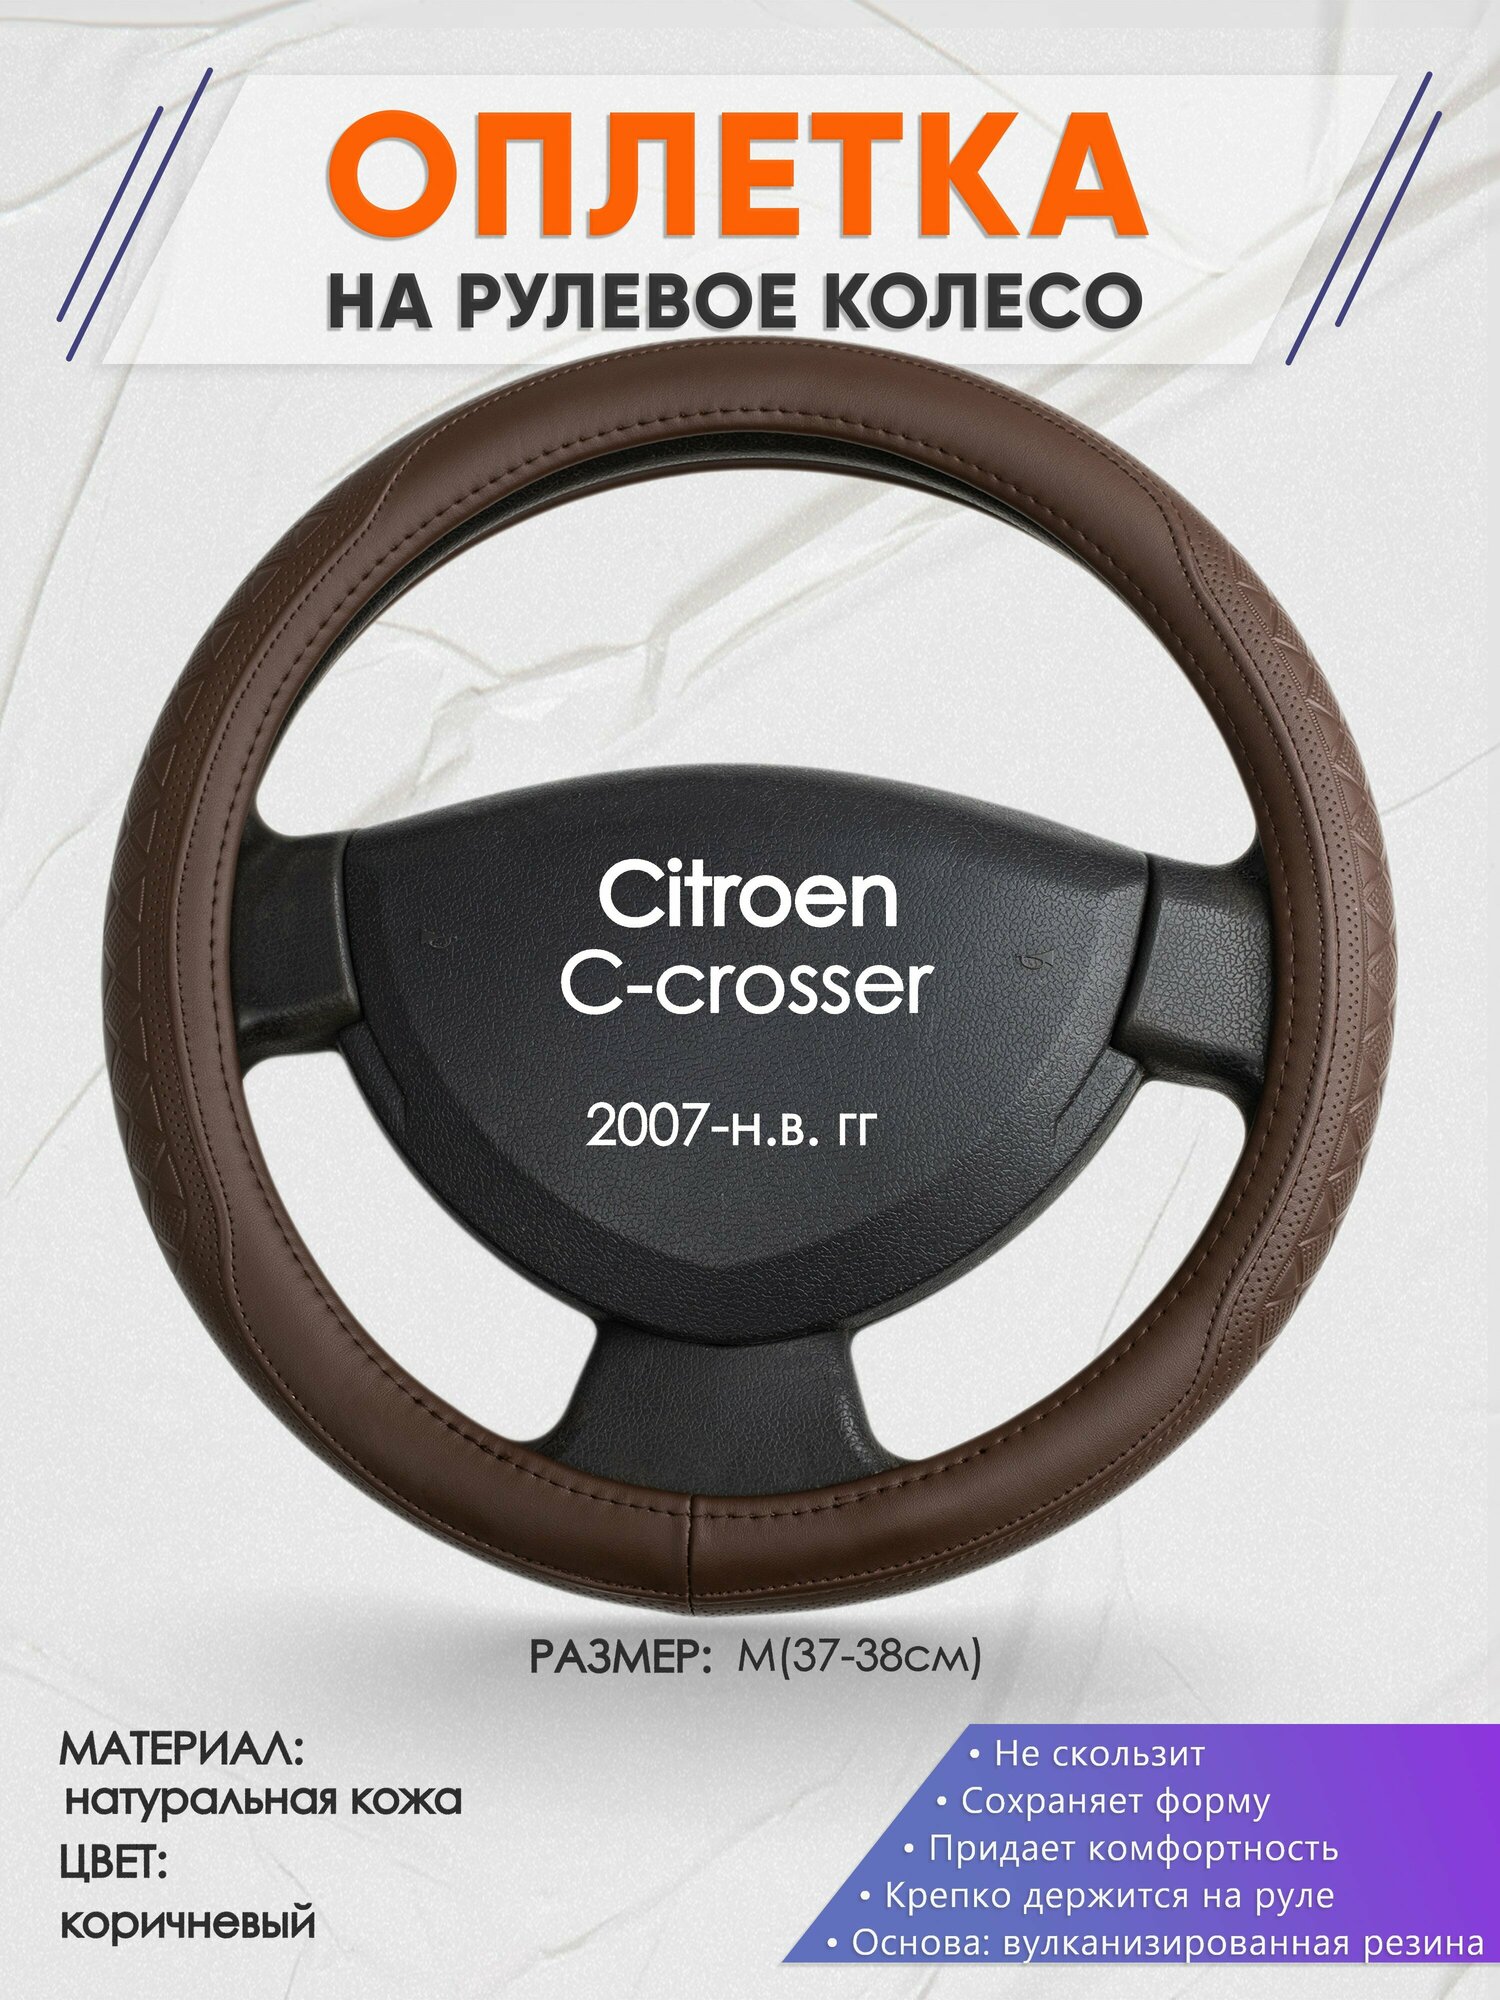 Оплетка на руль для Citroen C-crosser (Ситроен С-кроссер) 2007-н. в, M(37-38см), Натуральная кожа 88